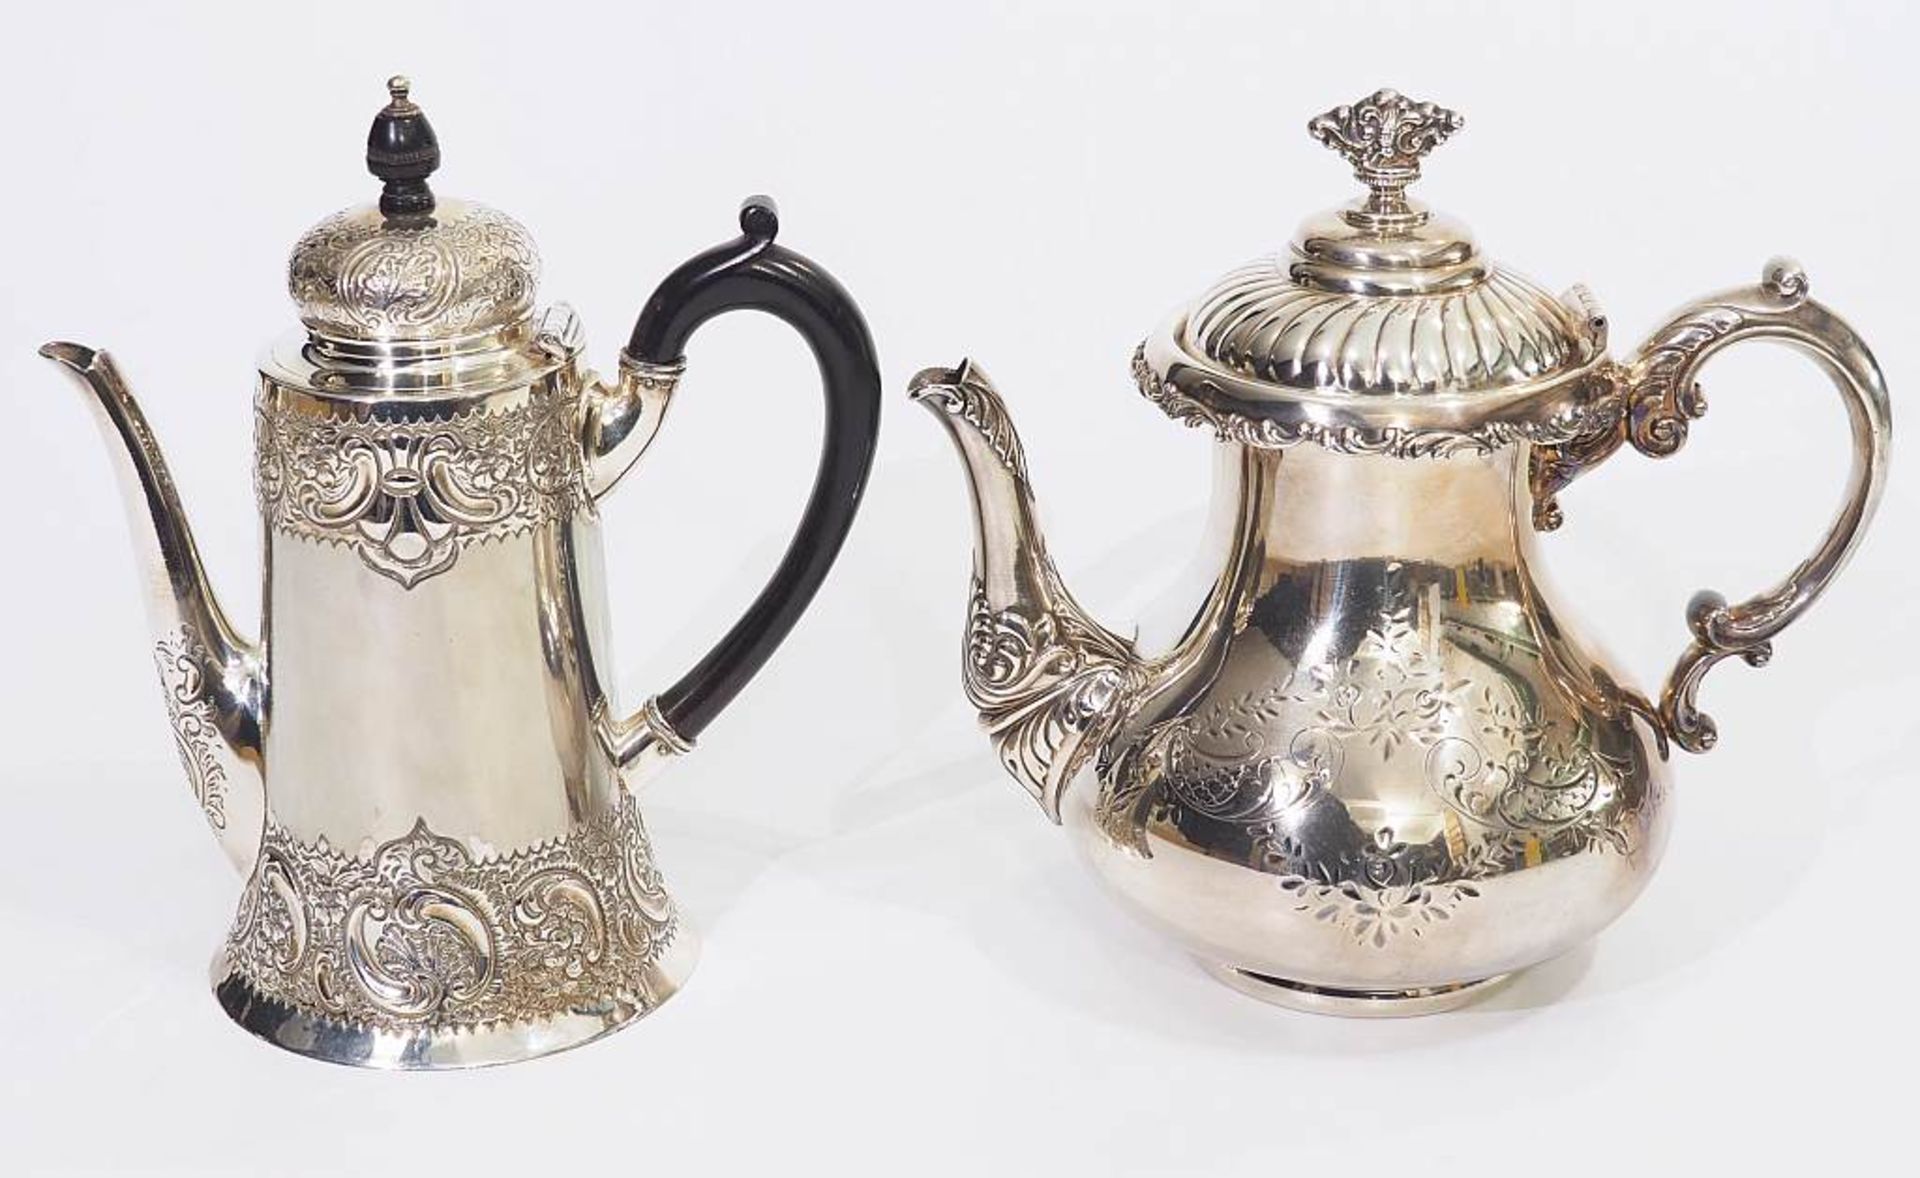 Zwei englische Teekannen, Plated. Zwei englische Teekannen, Plated. Ende 19./Anfang 20. Jahrhundert. - Image 2 of 6